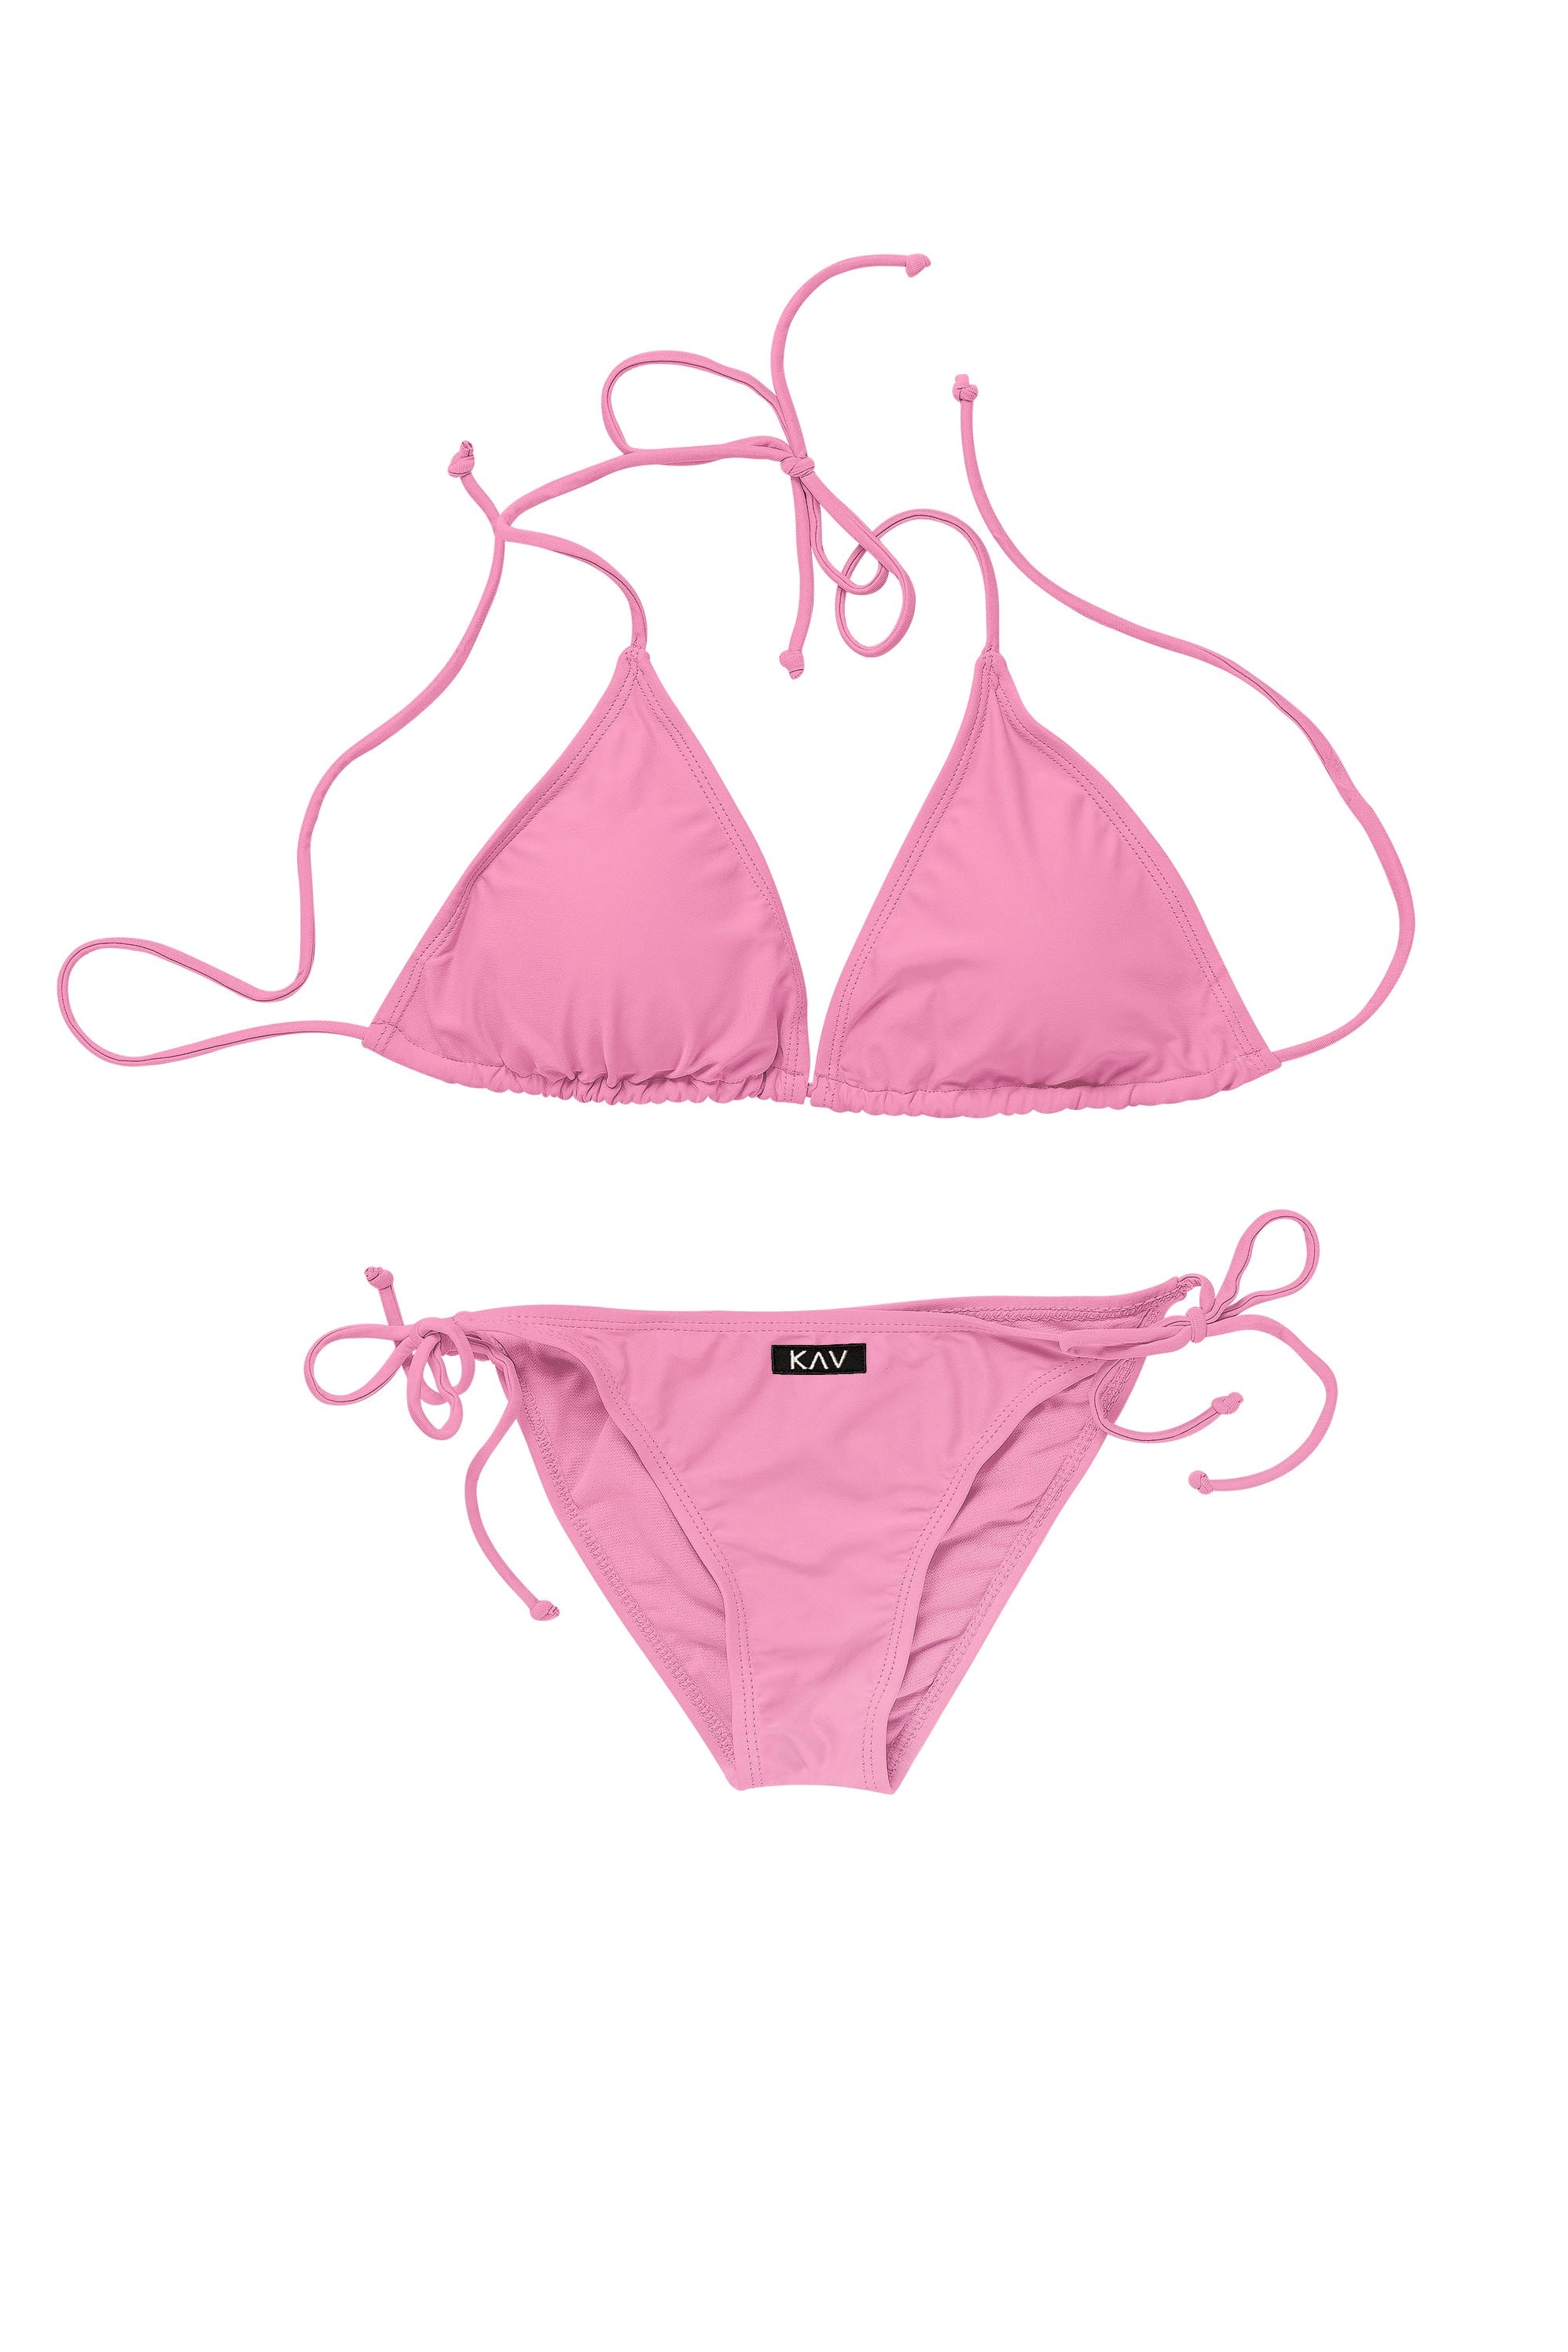 Minimal Pink Two Piece Triangle Bikini